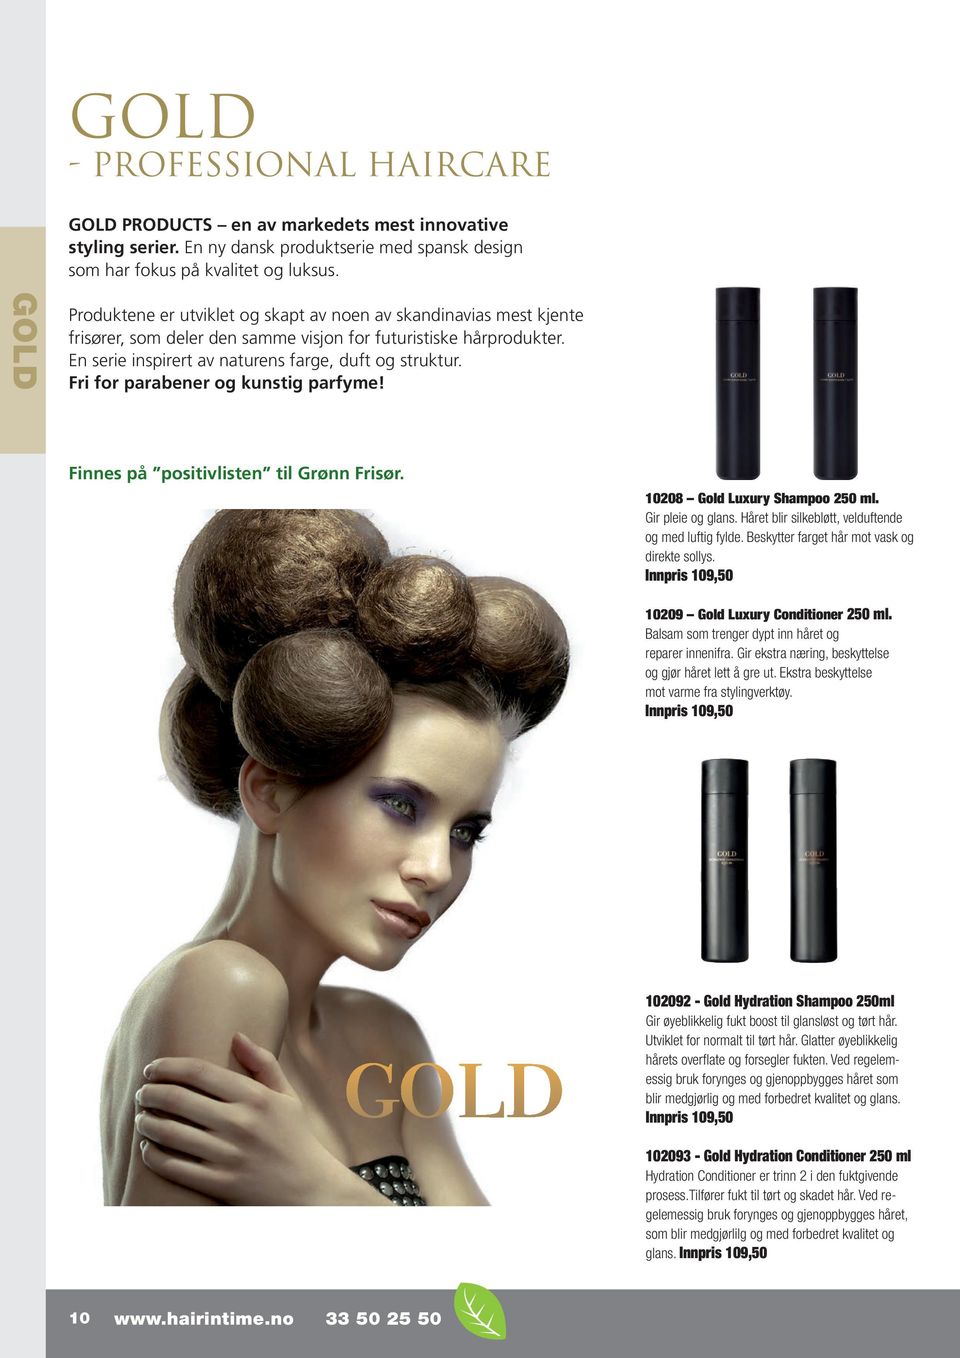 - PROFESSIONAL - HAIRCARE HAIRCARE GOLD Produktene er utviklet skapt av noen av skandinavias mest kjente frisører, som deler den samme visjon for futuristiske hårprodukter.